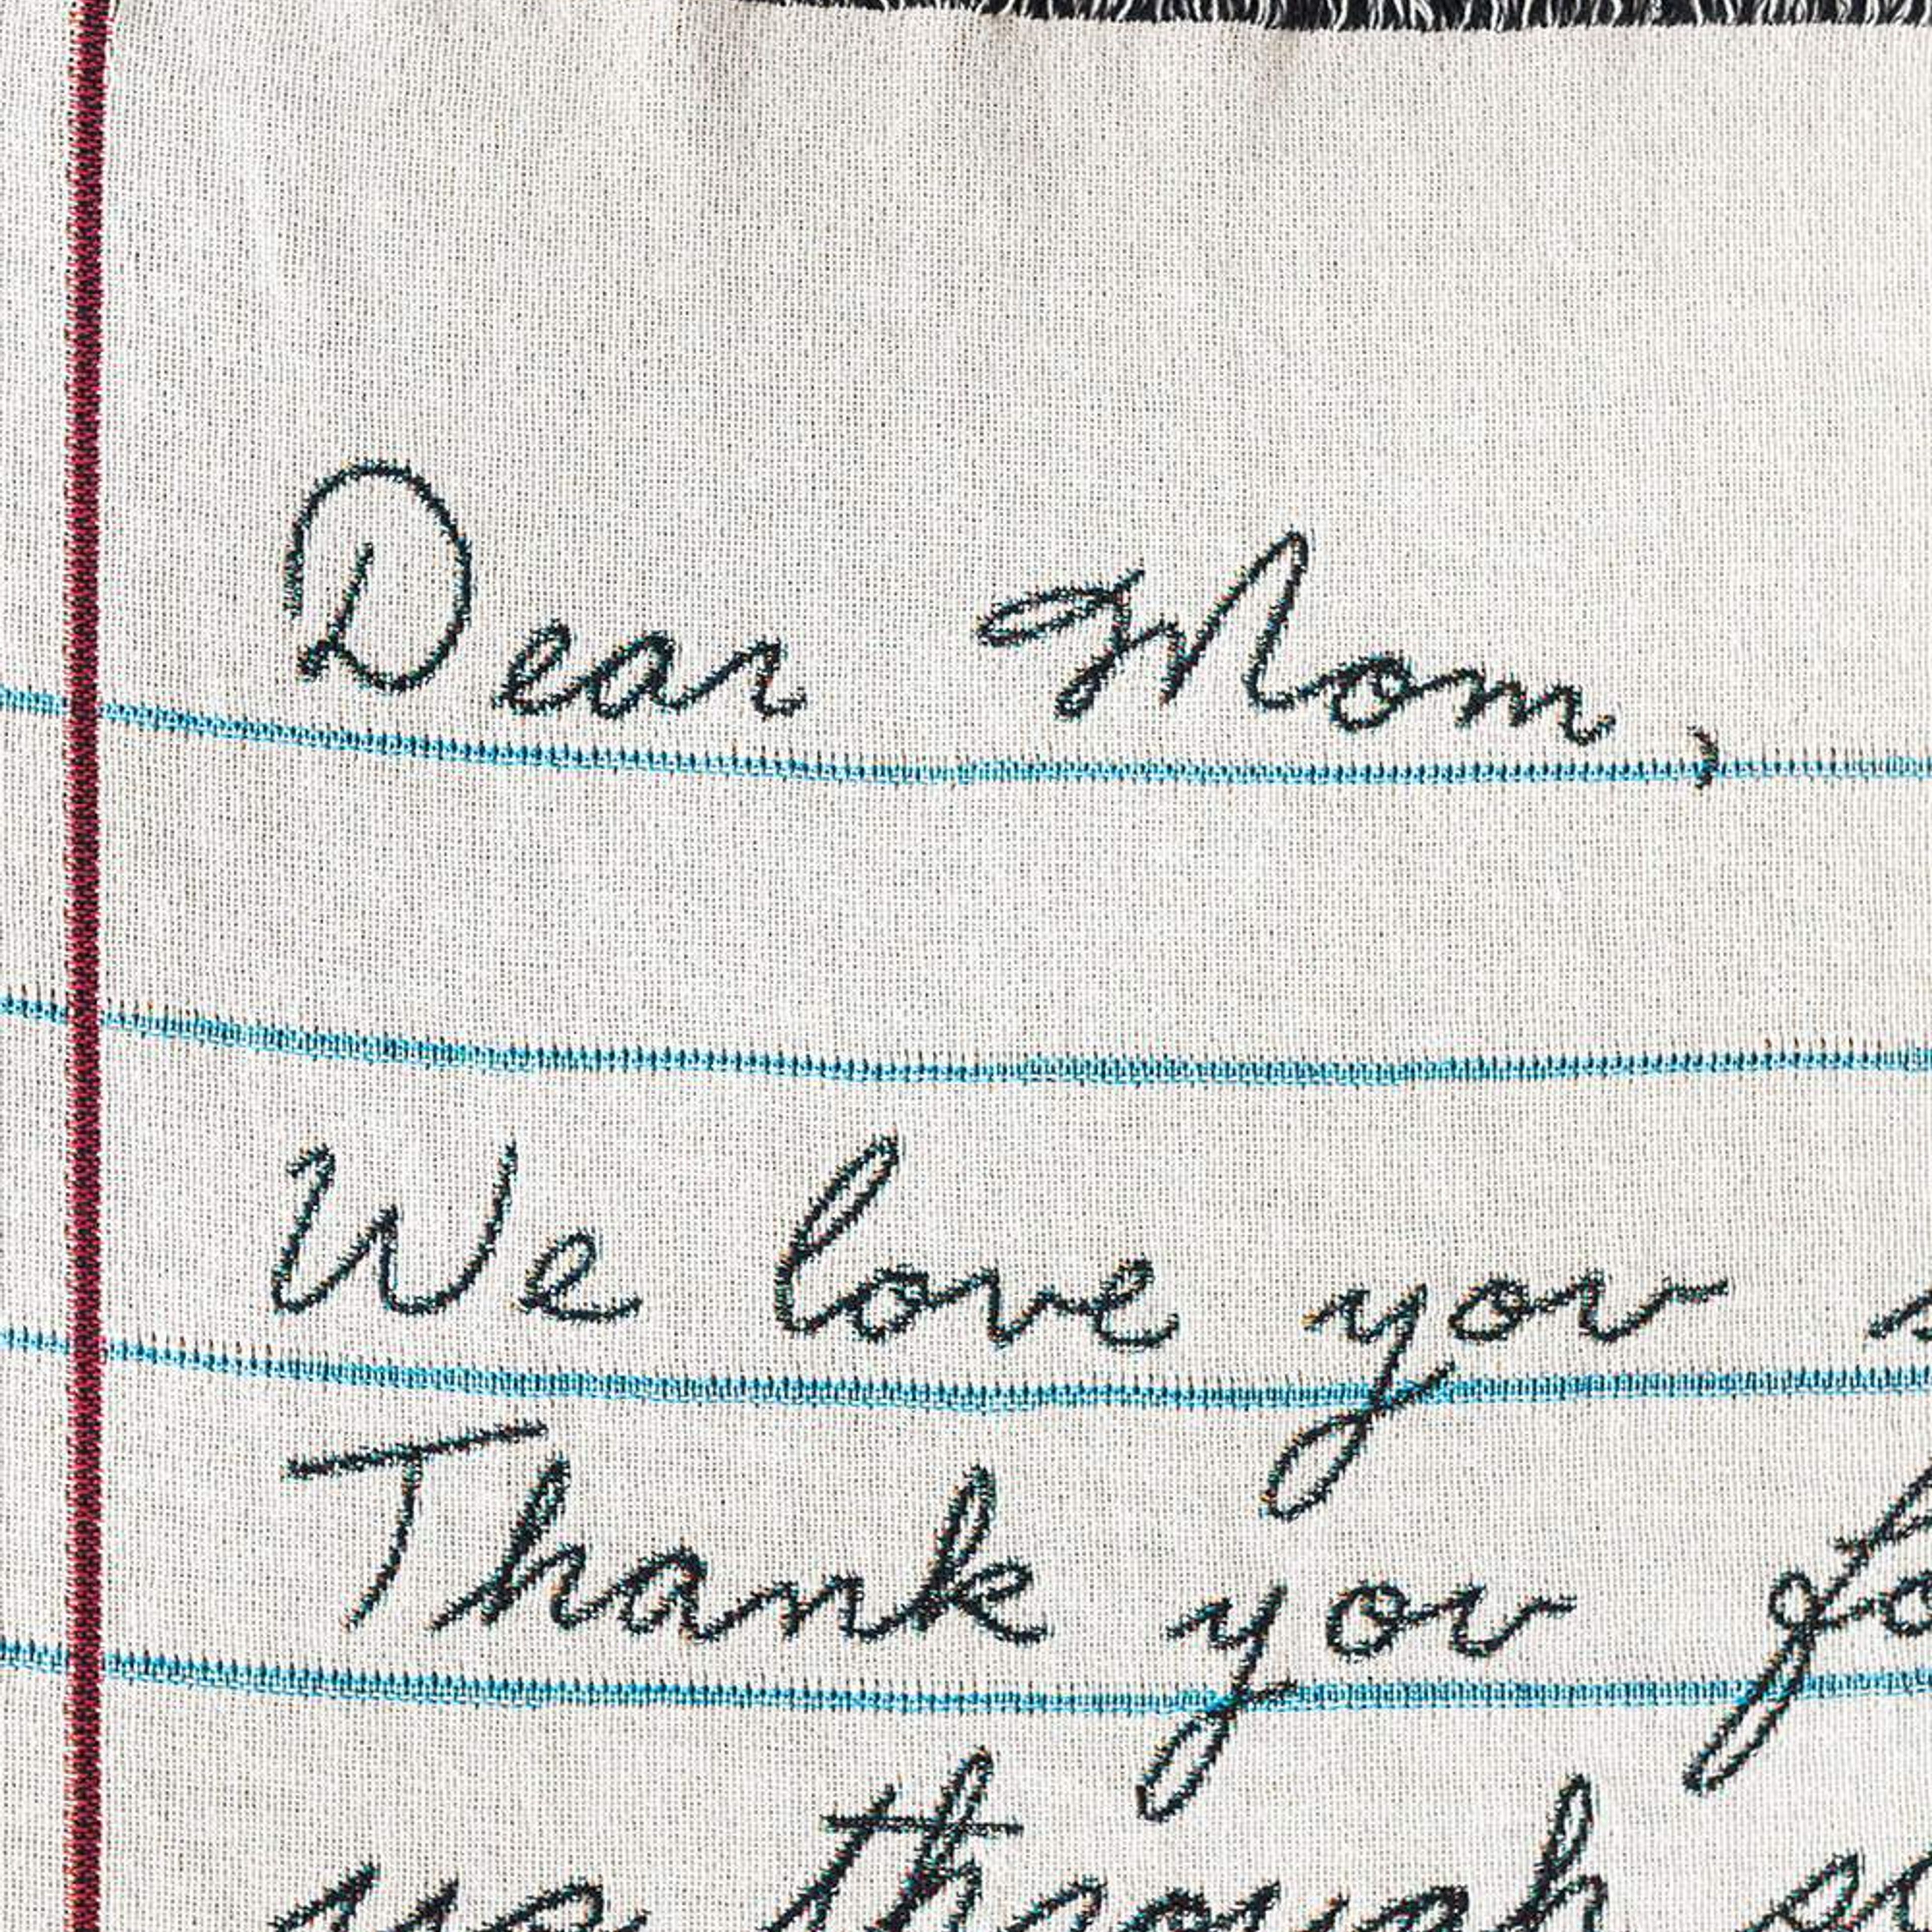 Love Letter Blanket: Handwriting